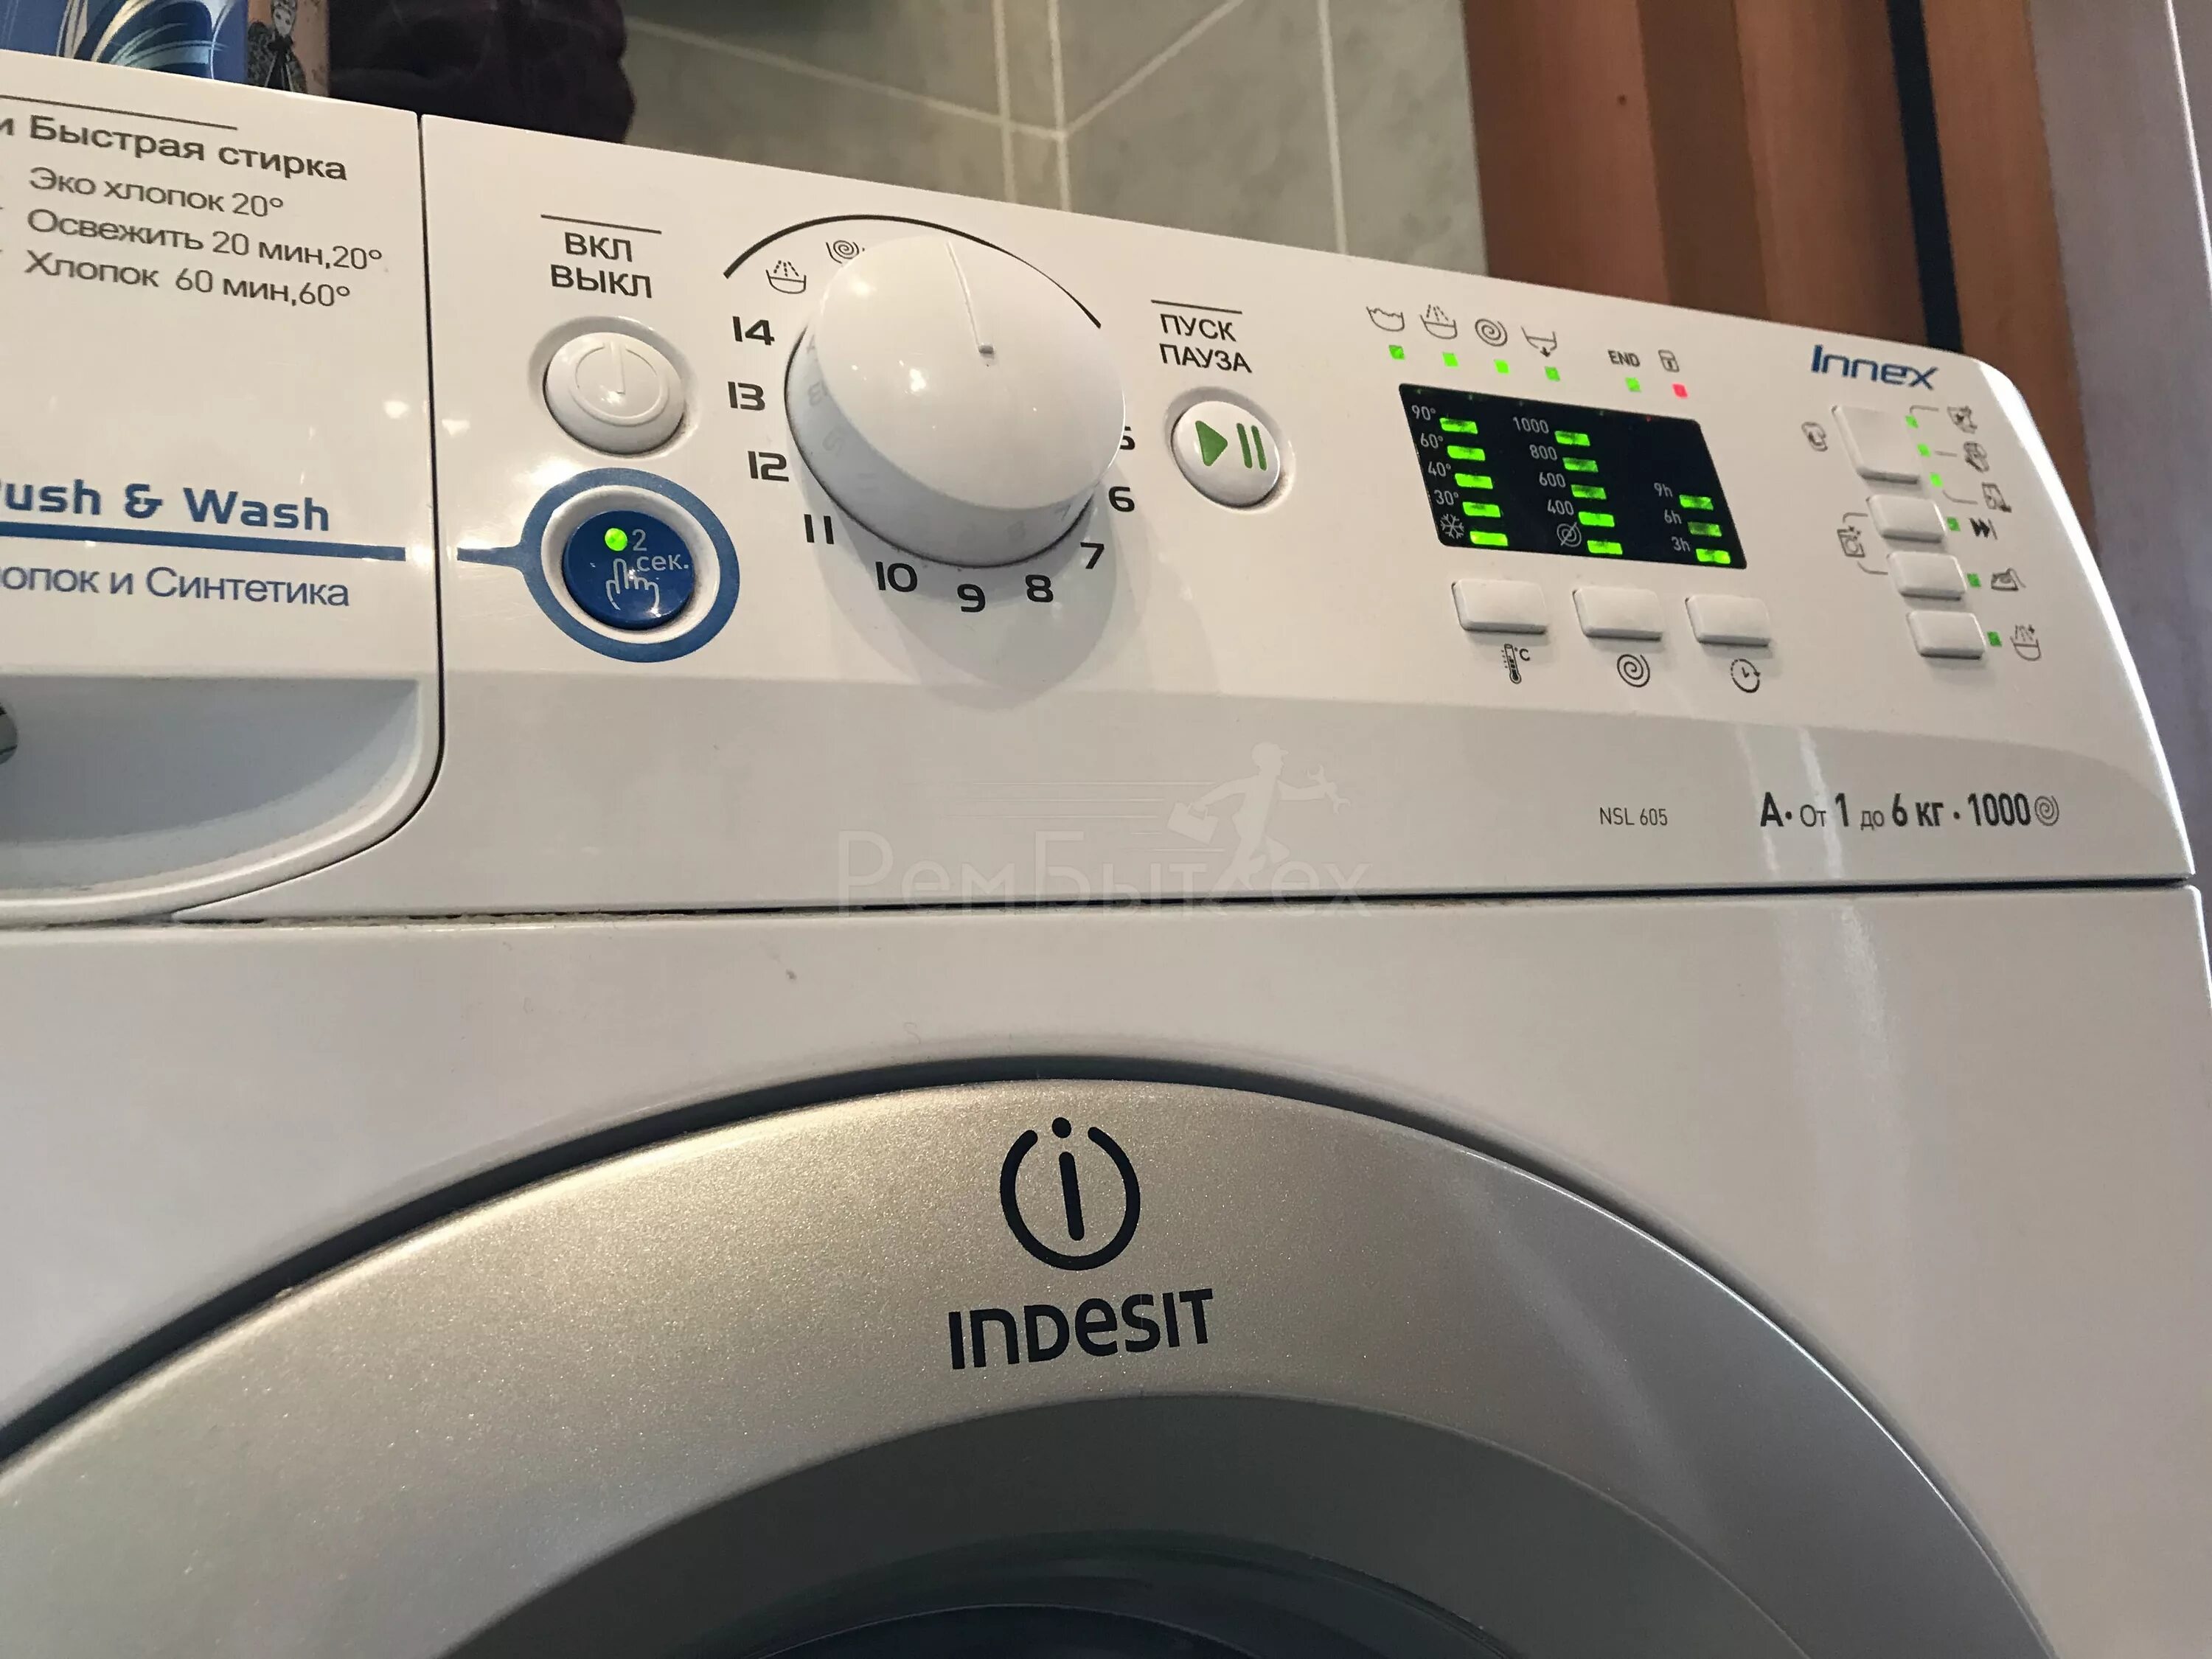 Мигает стирка индезит. Стиральная машина Индезит Innex Push Wash. Стиральная машина Индезит иннекс nsl605. Индезит стиральная машина NSL 605 S.